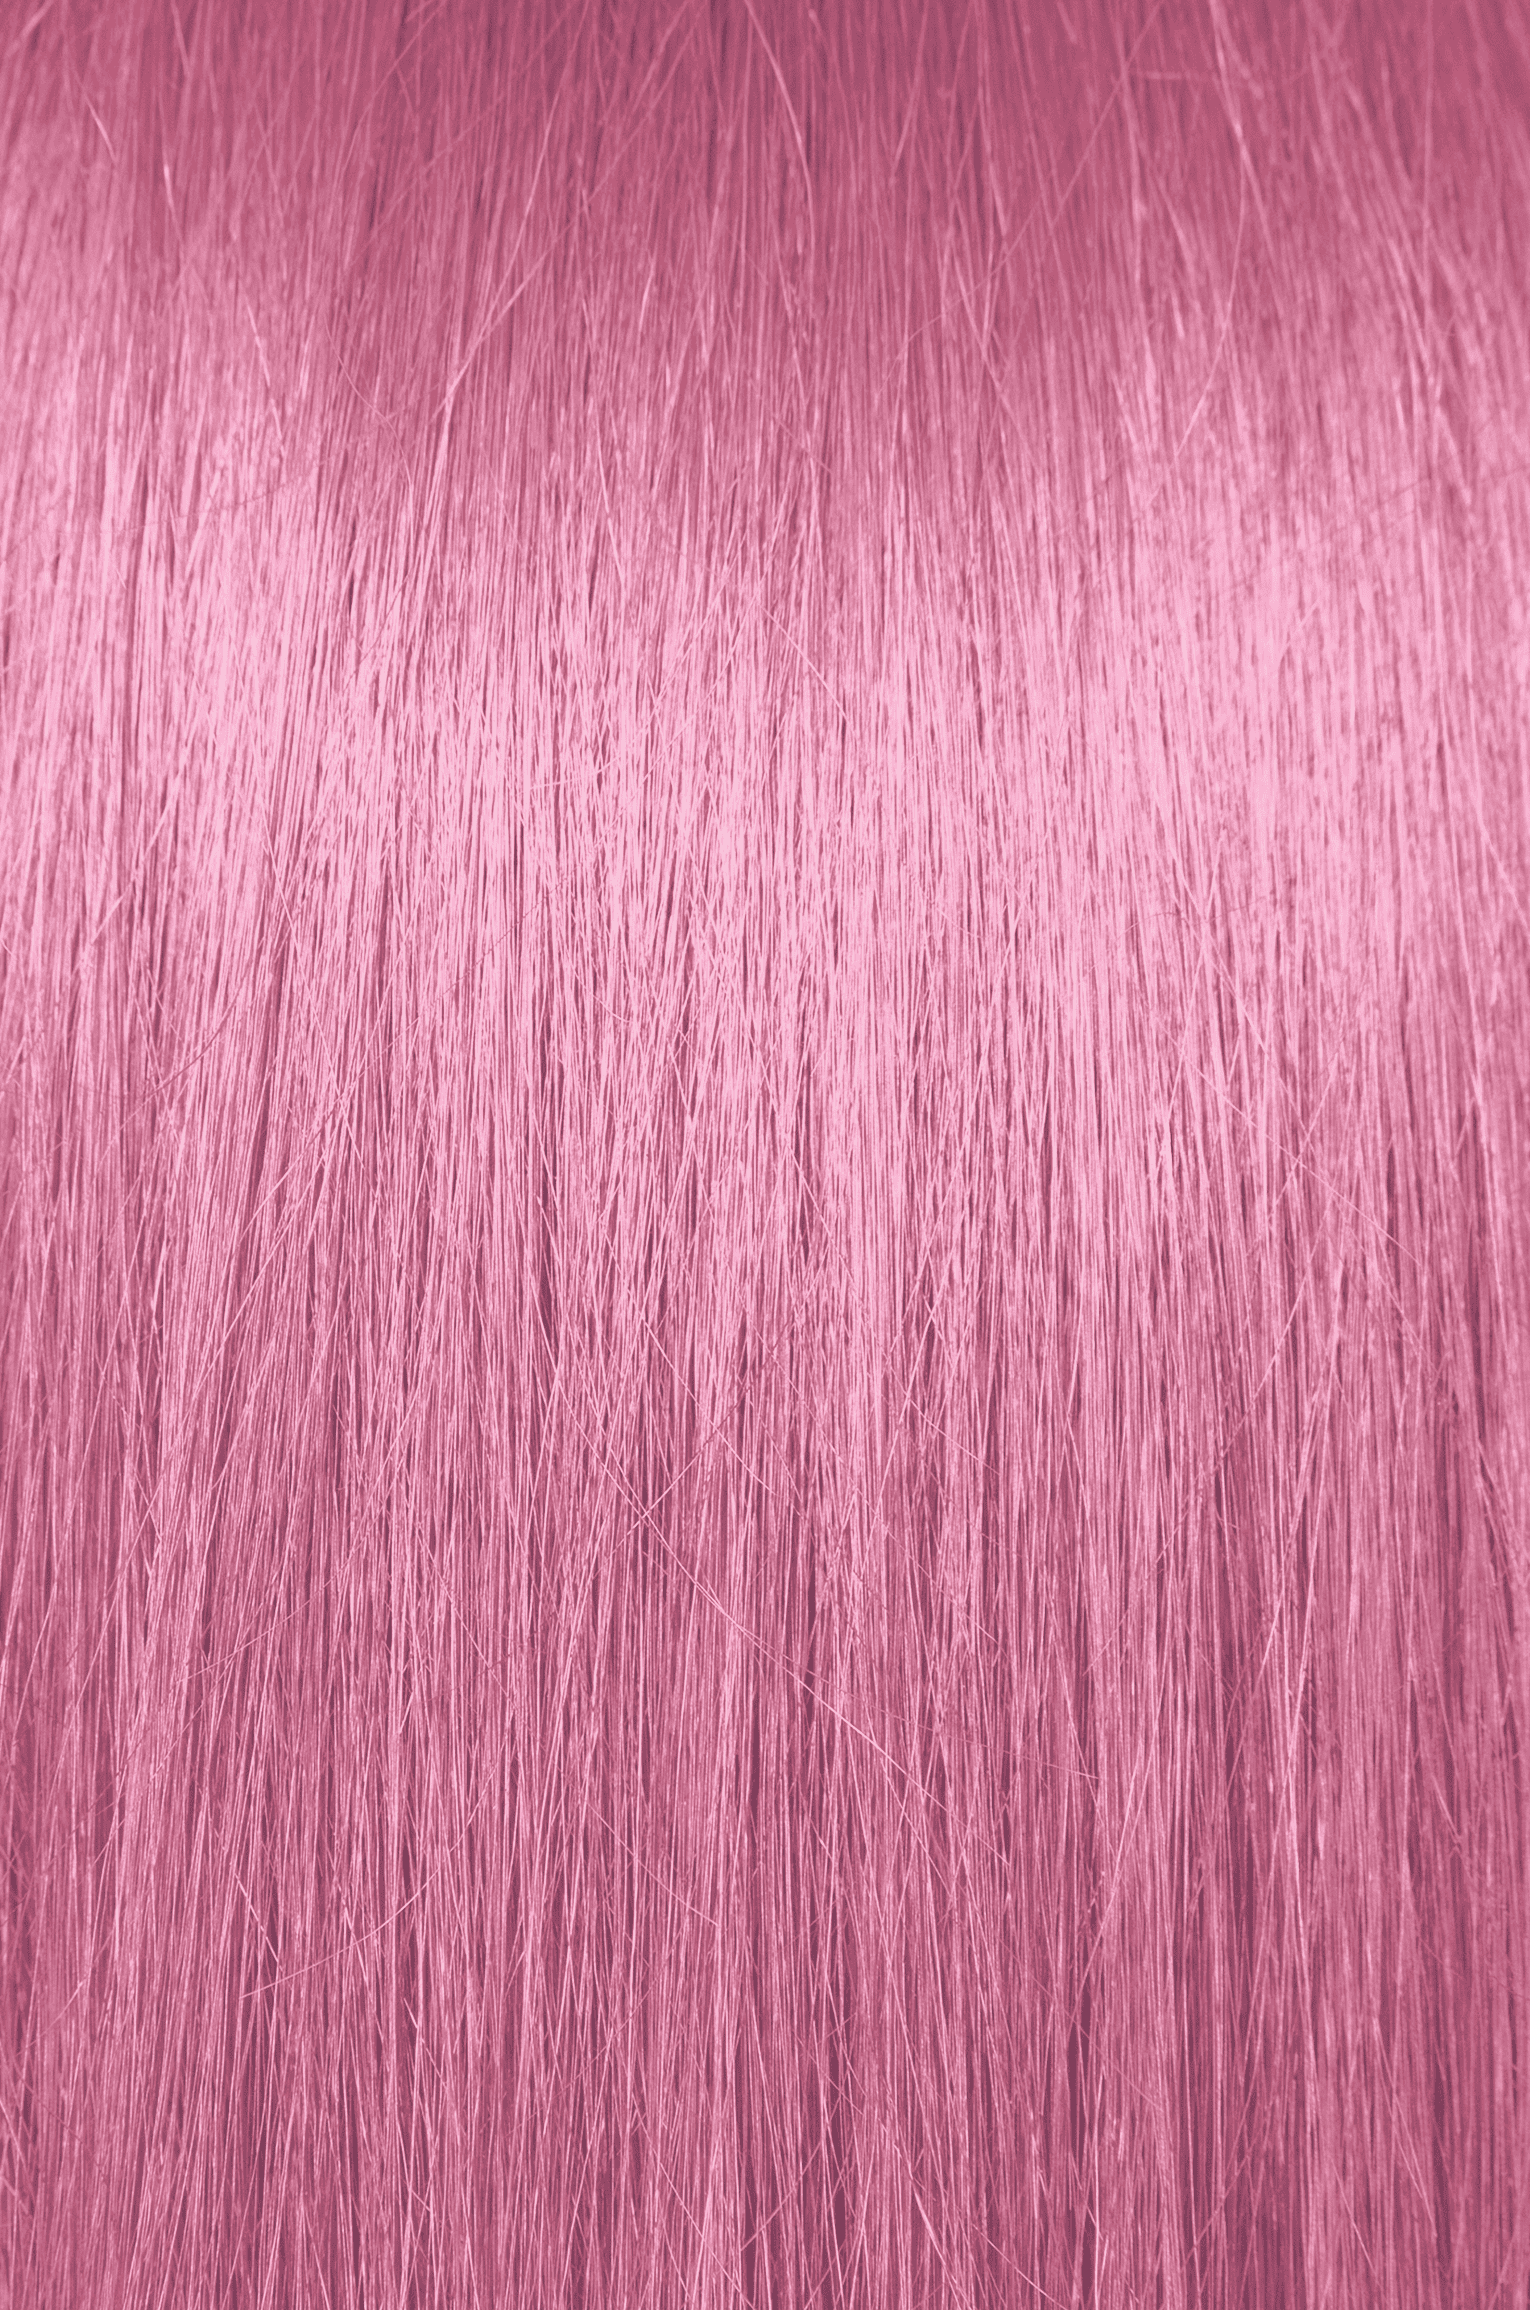 Pravana ChromaSilk VIVIDS Pink